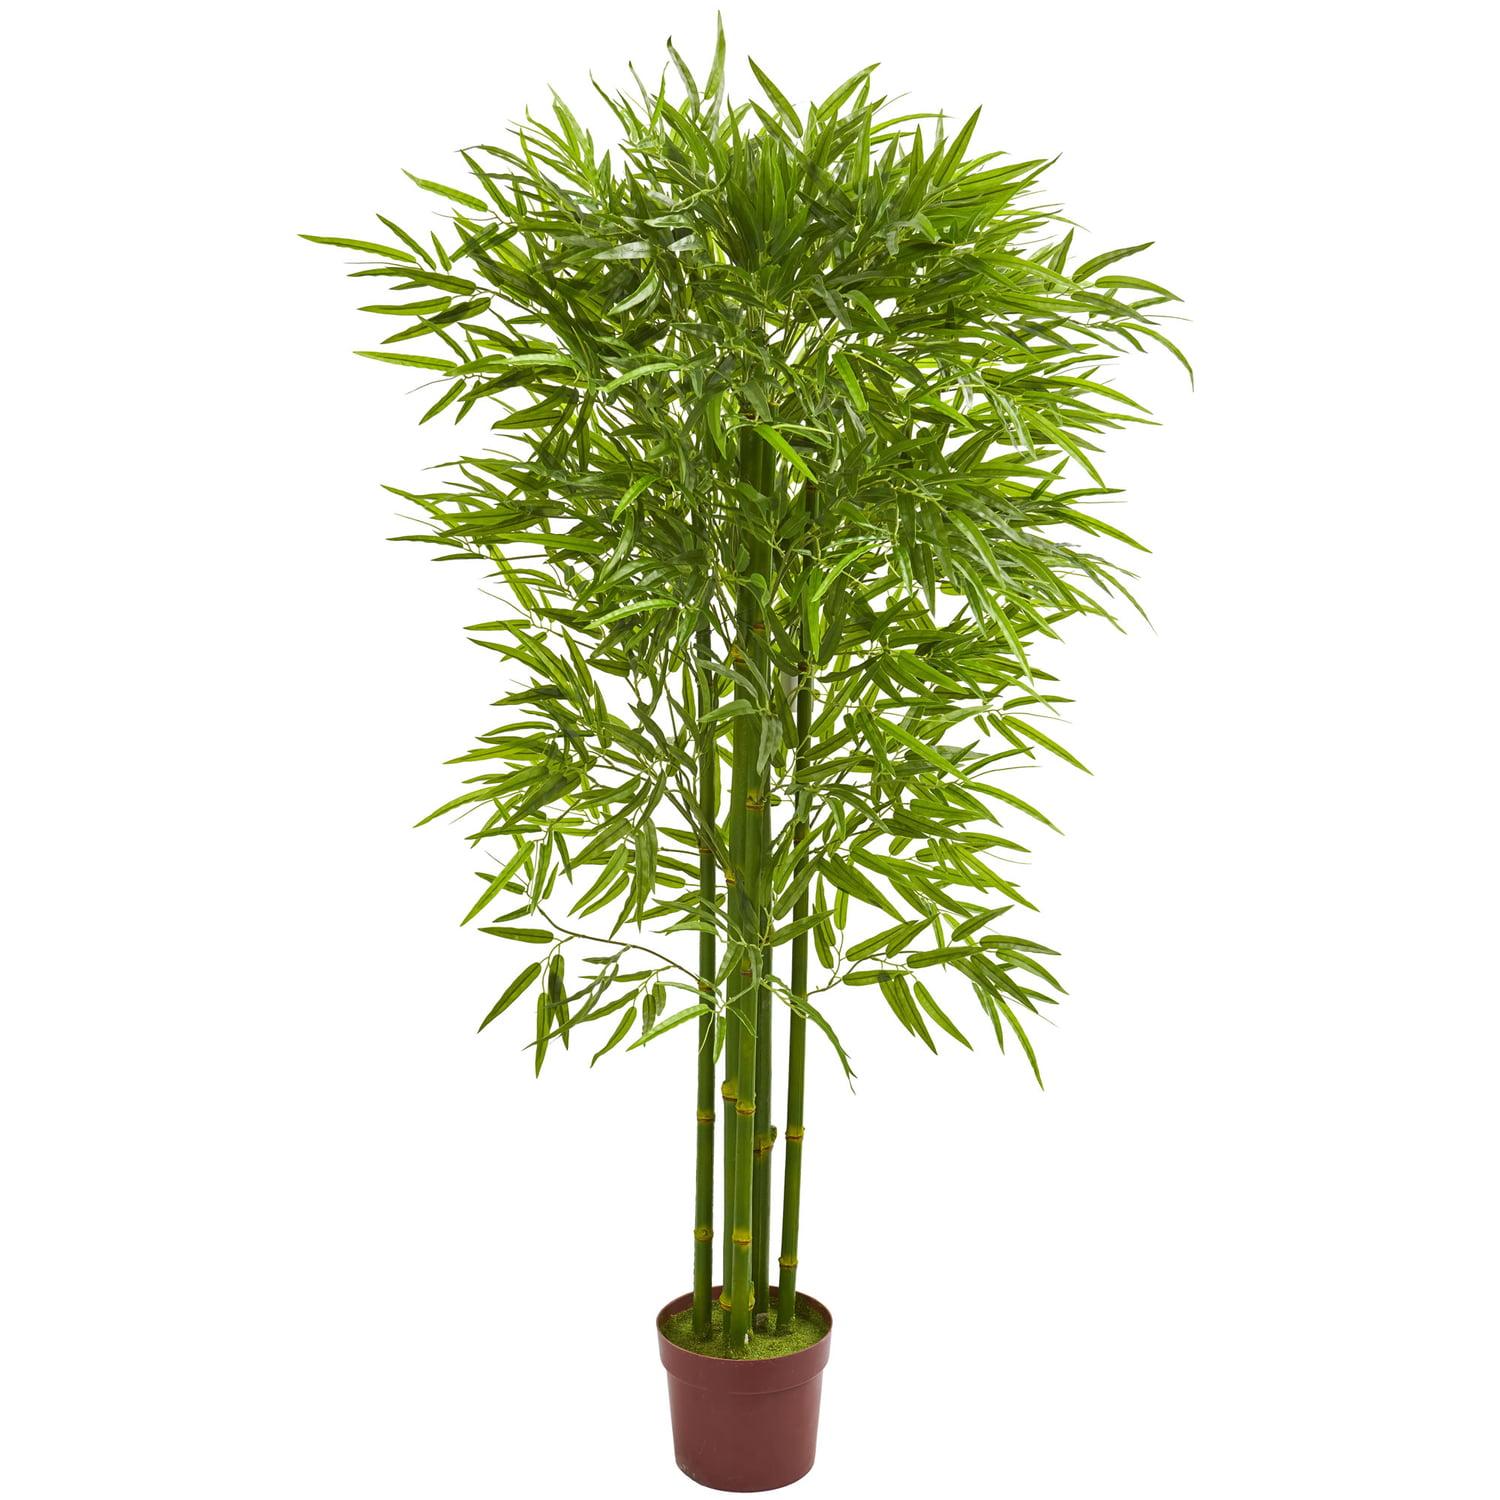 Eternal Summer 5.5' UV-Resistant Outdoor Bamboo Tree in Pot